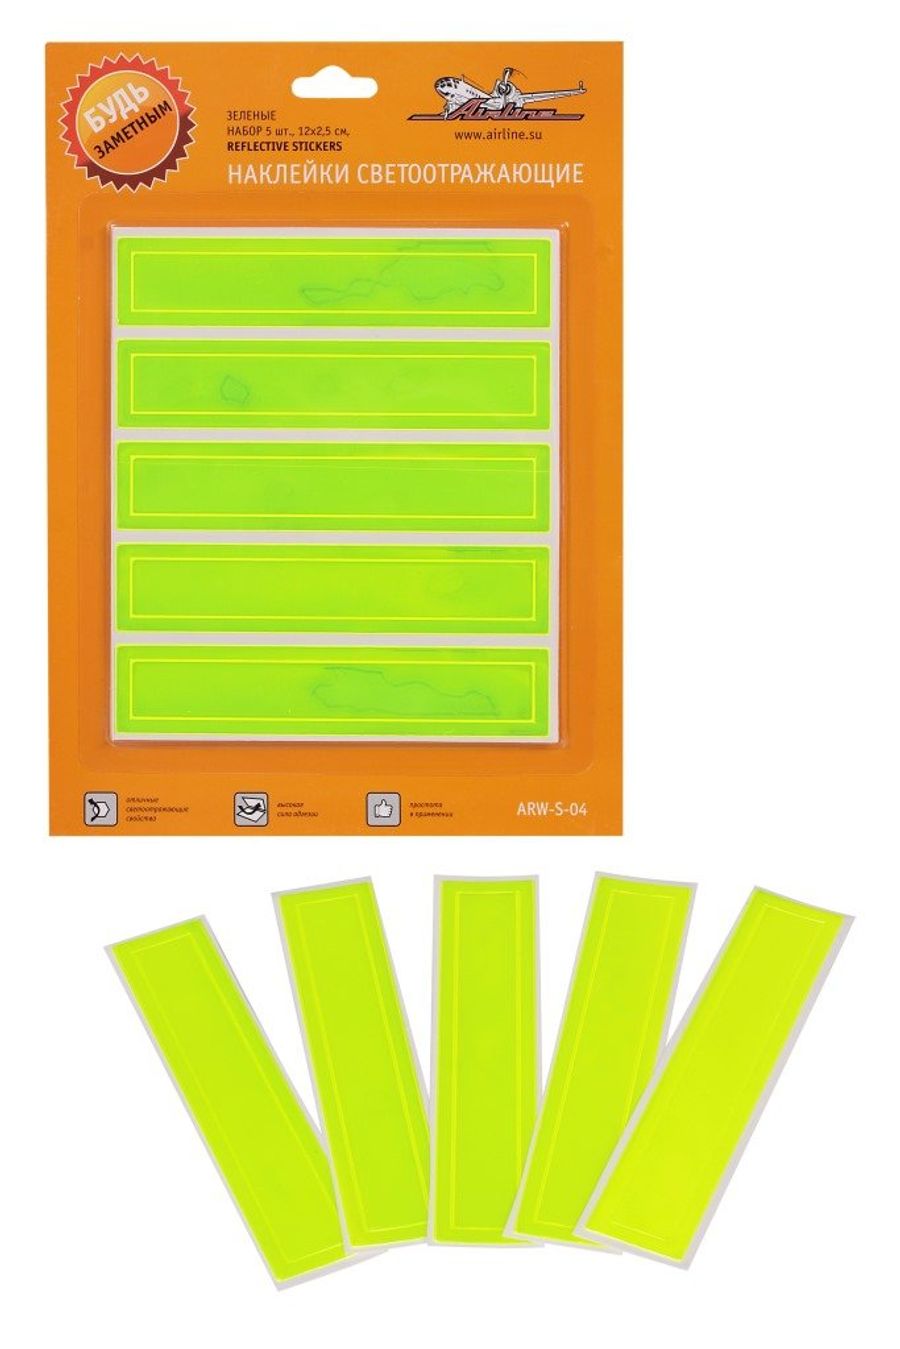 Наклейки светоотражающие набор 5 шт.,12*2,5 см, зеленые  "AIRLINE"